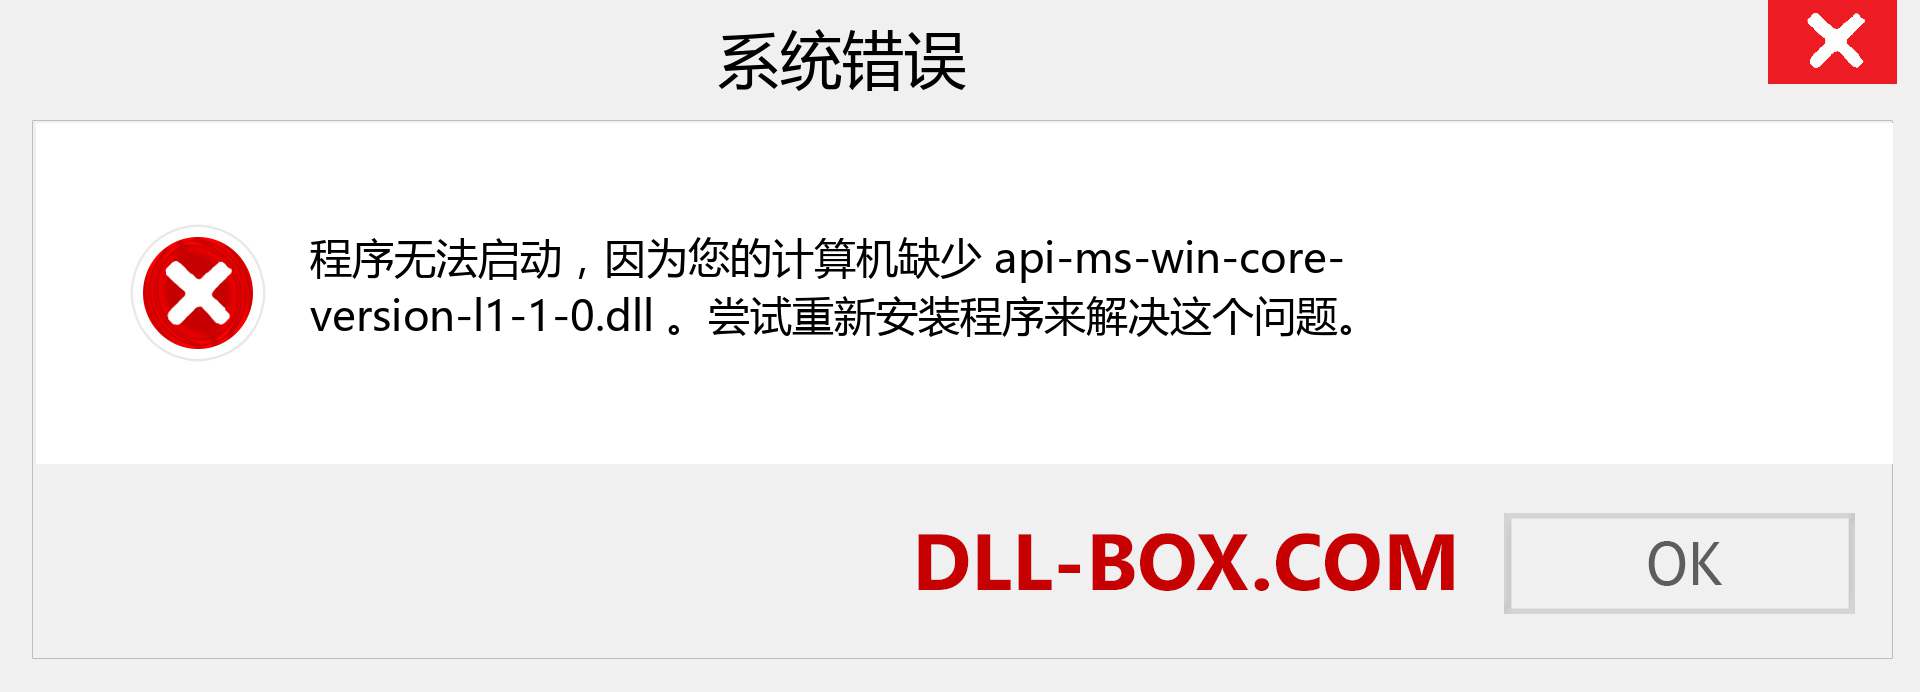 api-ms-win-core-version-l1-1-0.dll 文件丢失？。 适用于 Windows 7、8、10 的下载 - 修复 Windows、照片、图像上的 api-ms-win-core-version-l1-1-0 dll 丢失错误